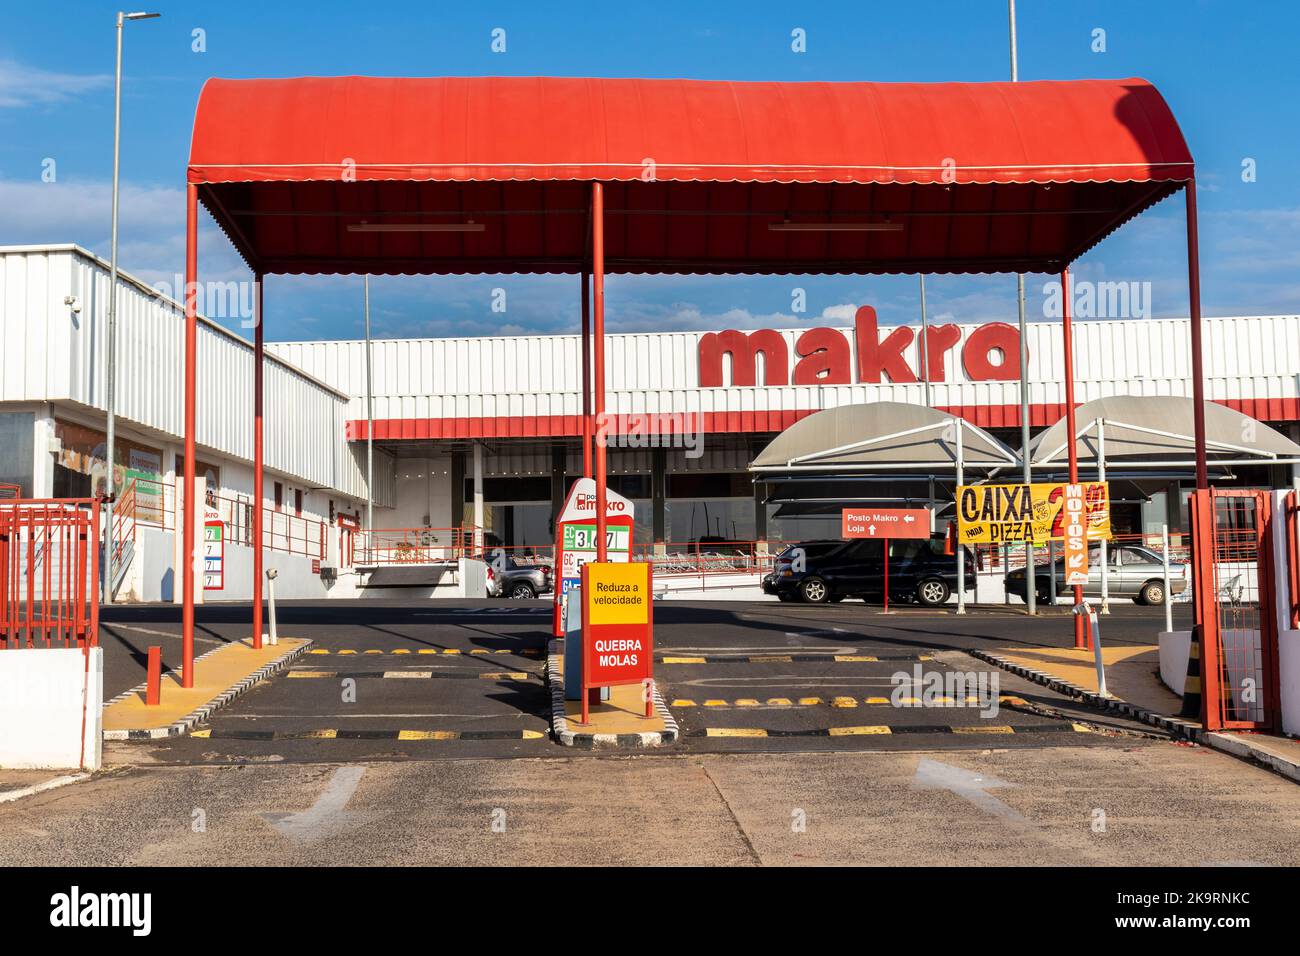 Marilia, Sao Paulo, Brasilien, 29. Juli 2022. Makro-Schild an der Abzweigung. Makro ist eine internationale Marke von Warehouse Clubs, auch Cash genannt und trägt in t Stockfoto